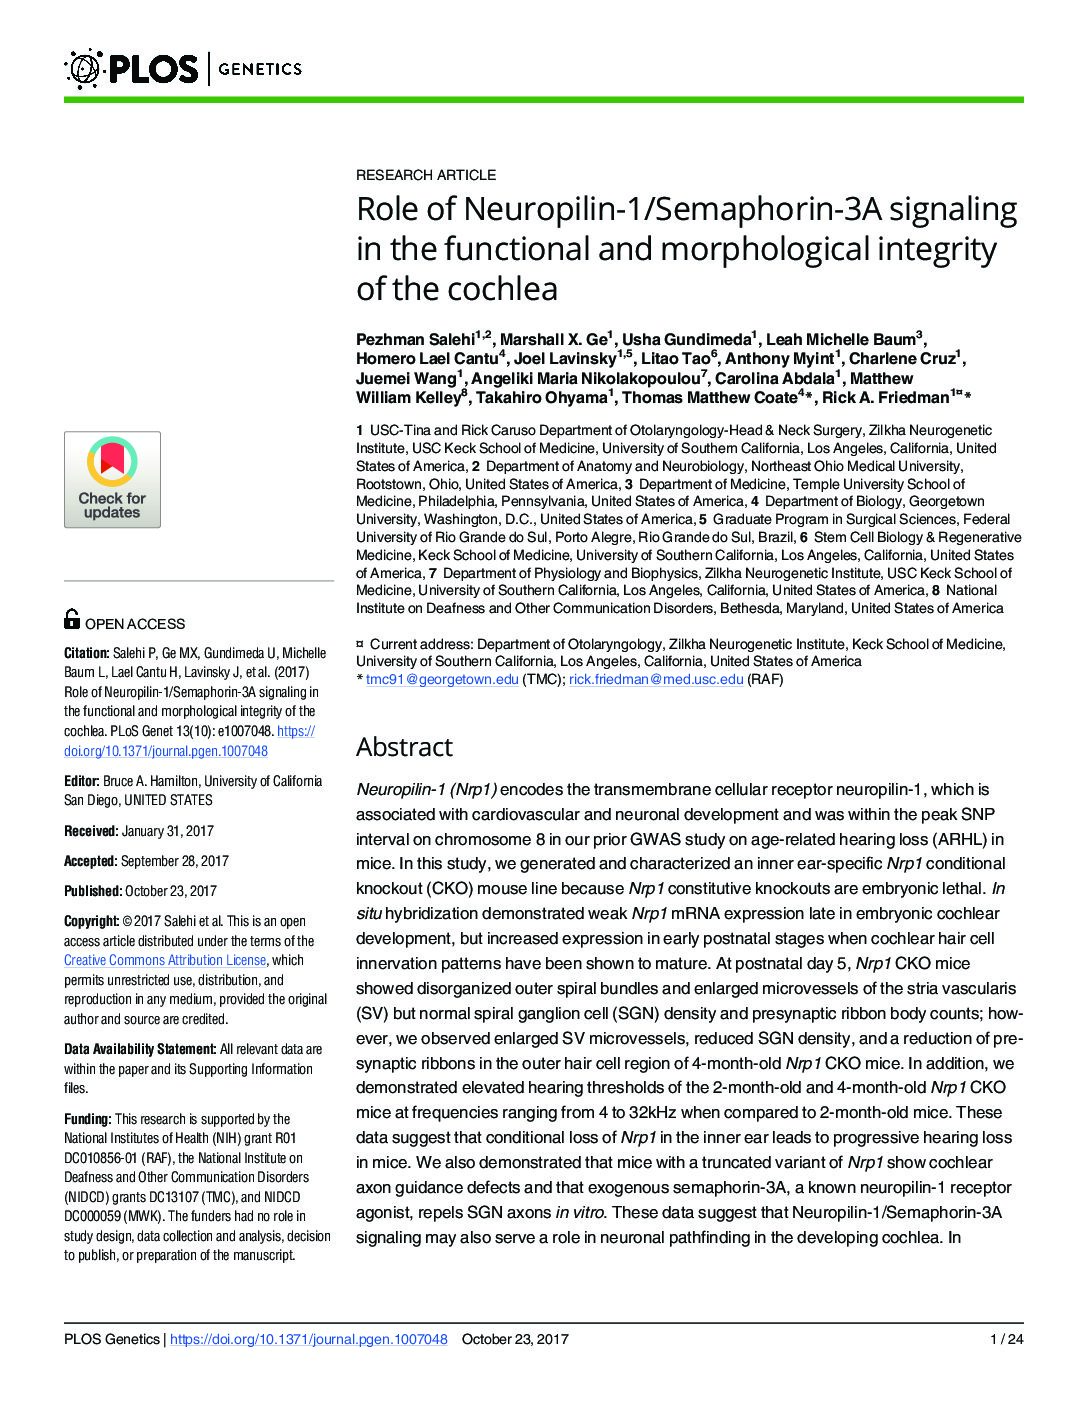 Papel Da Sinalização Da Neuropilina-1/Semaforina-3A Na Integridade Funcional E Morfológica Da Cóclea